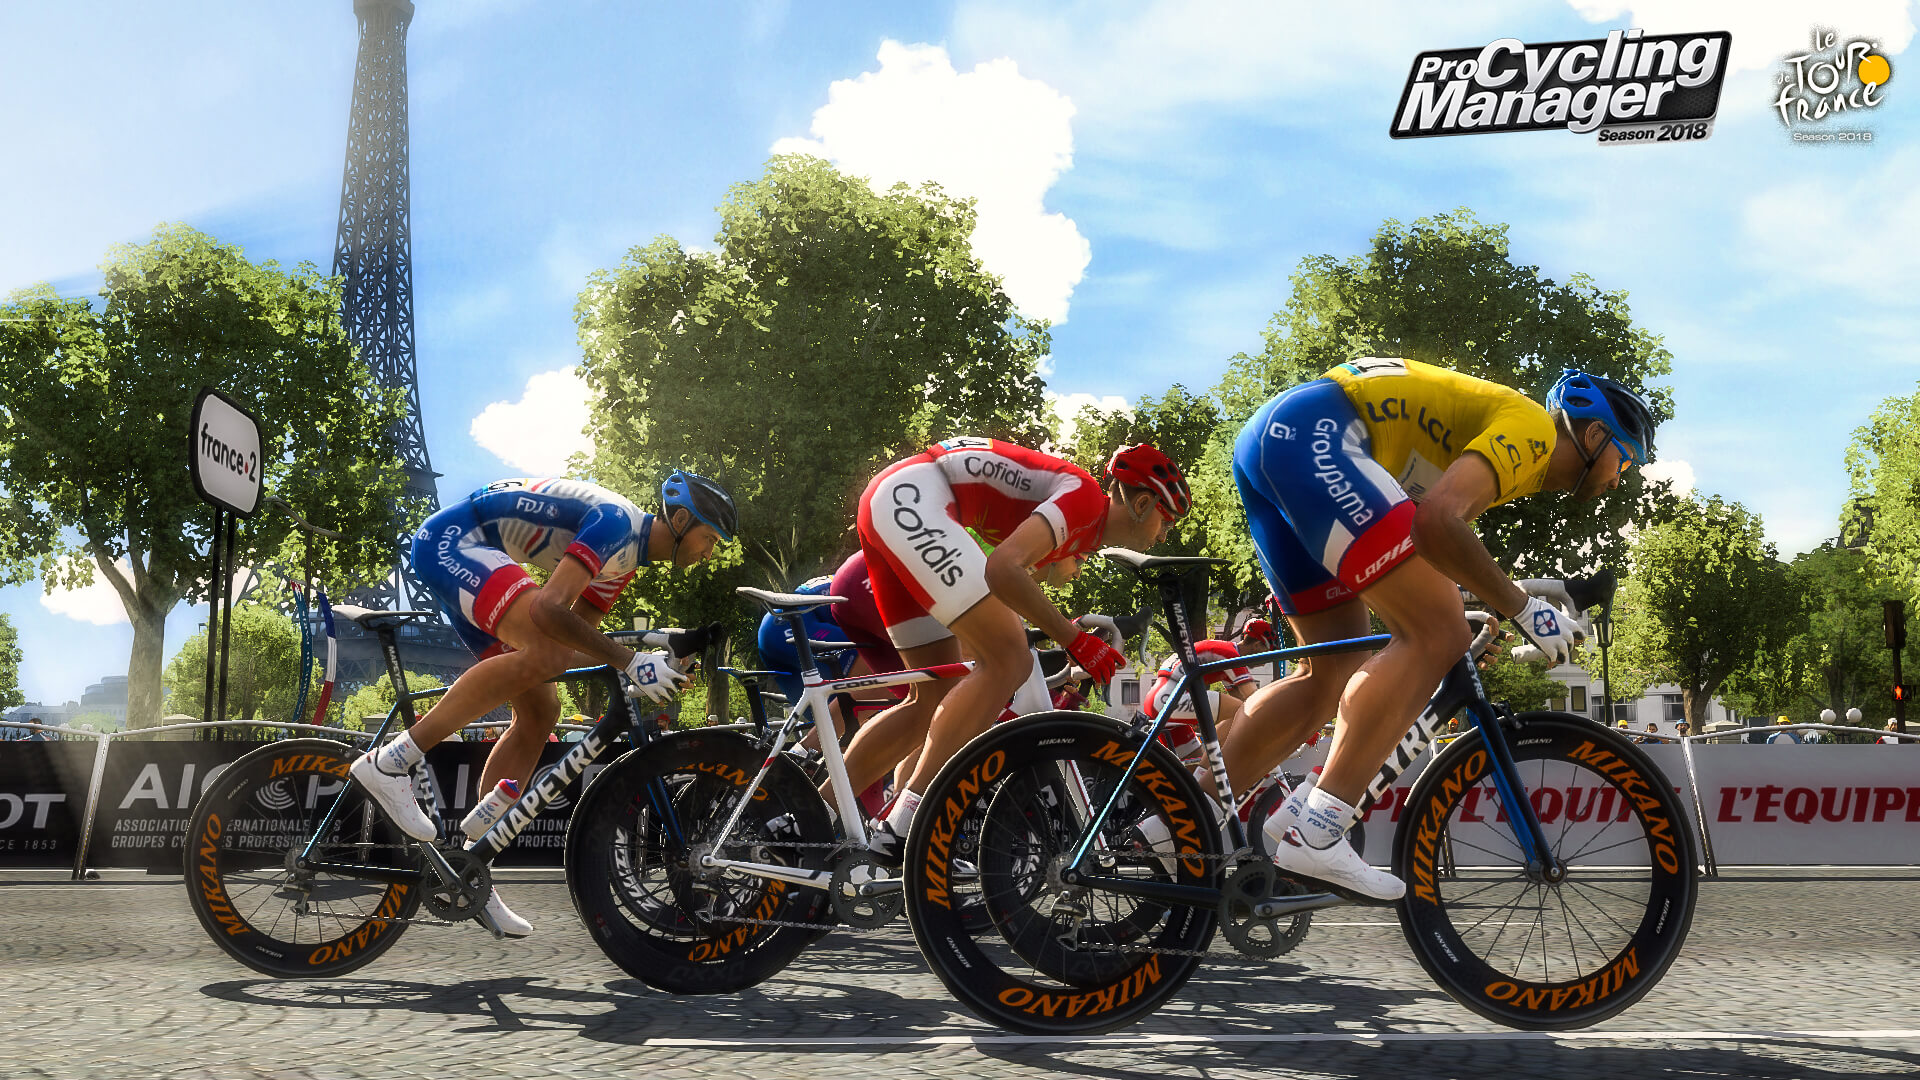 Anunciado el lanzamiento de Le Tour de France 2018 para el mes de junio | Primeras imágenes